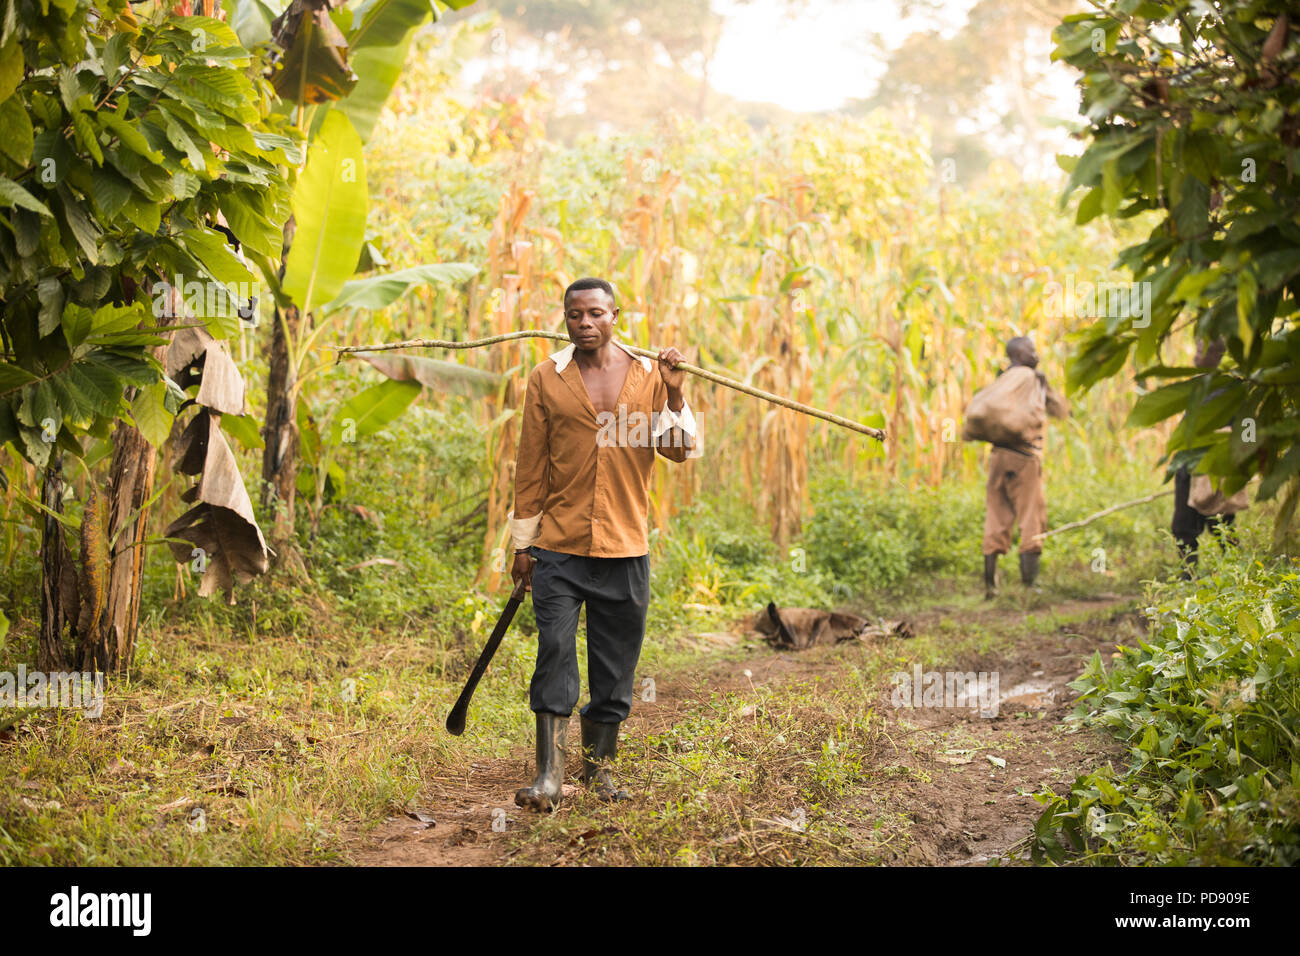 Eine Kakaobohne harvester Spaziergänge durch einen Kakao Plantagen mit einer langen Stange verwendet er die bean pods von Bäumen aus Mukono, Uganda, Ostafrika zu extrahieren. Stockfoto